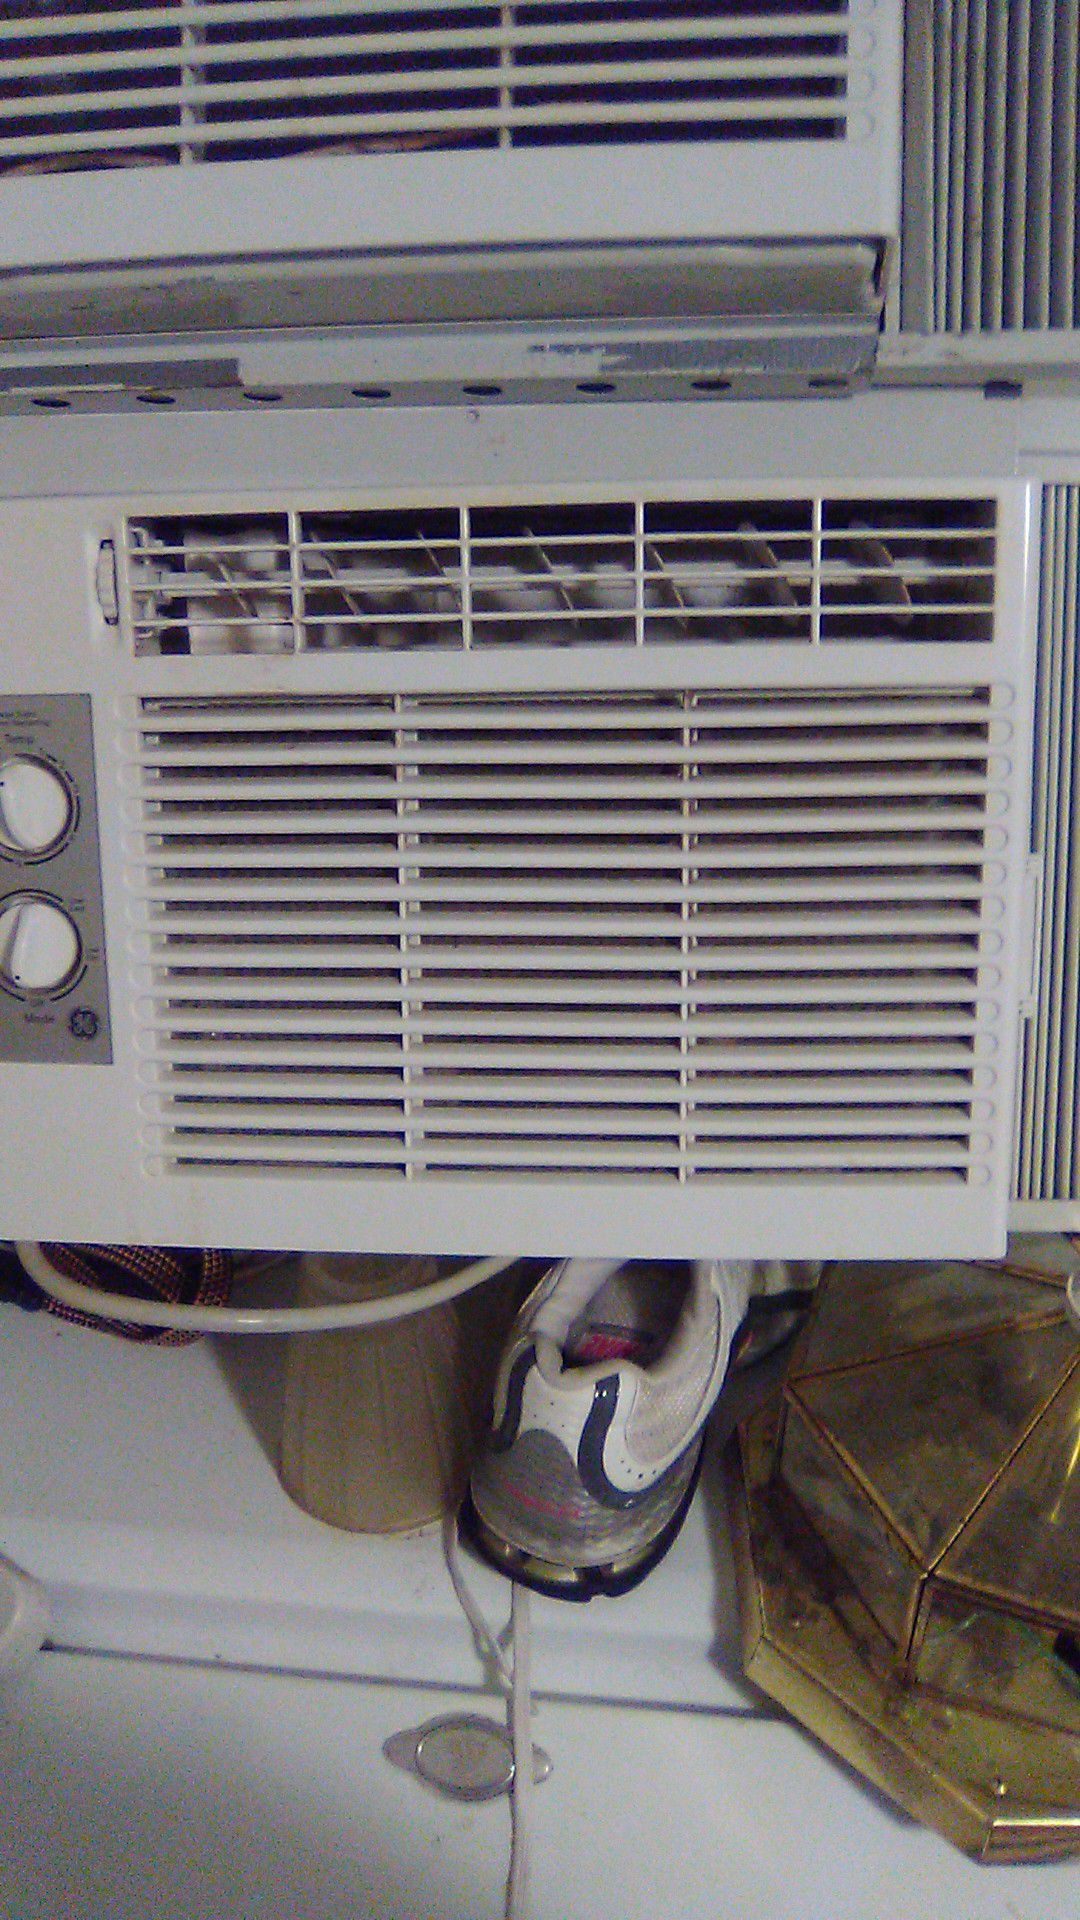 Ge air conditioner